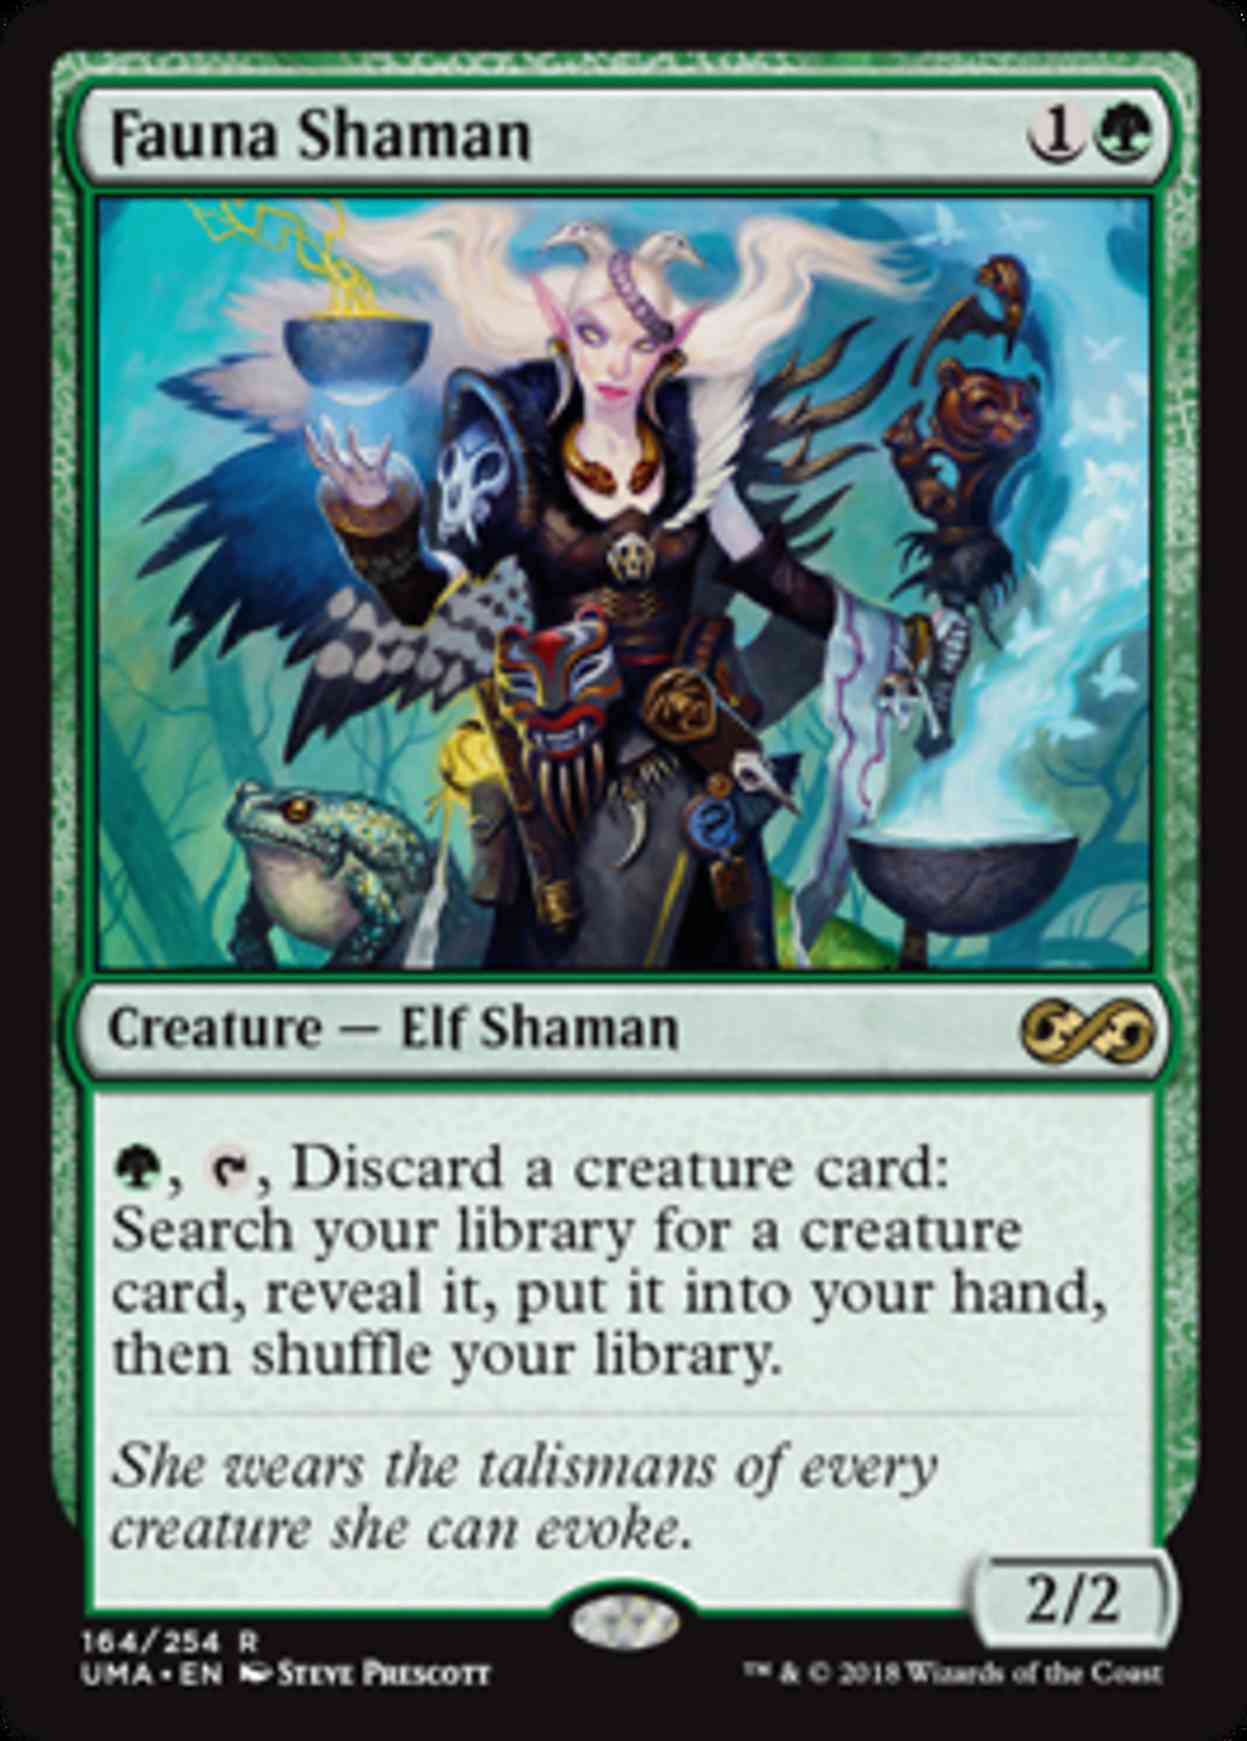 Fauna Shaman magic card front